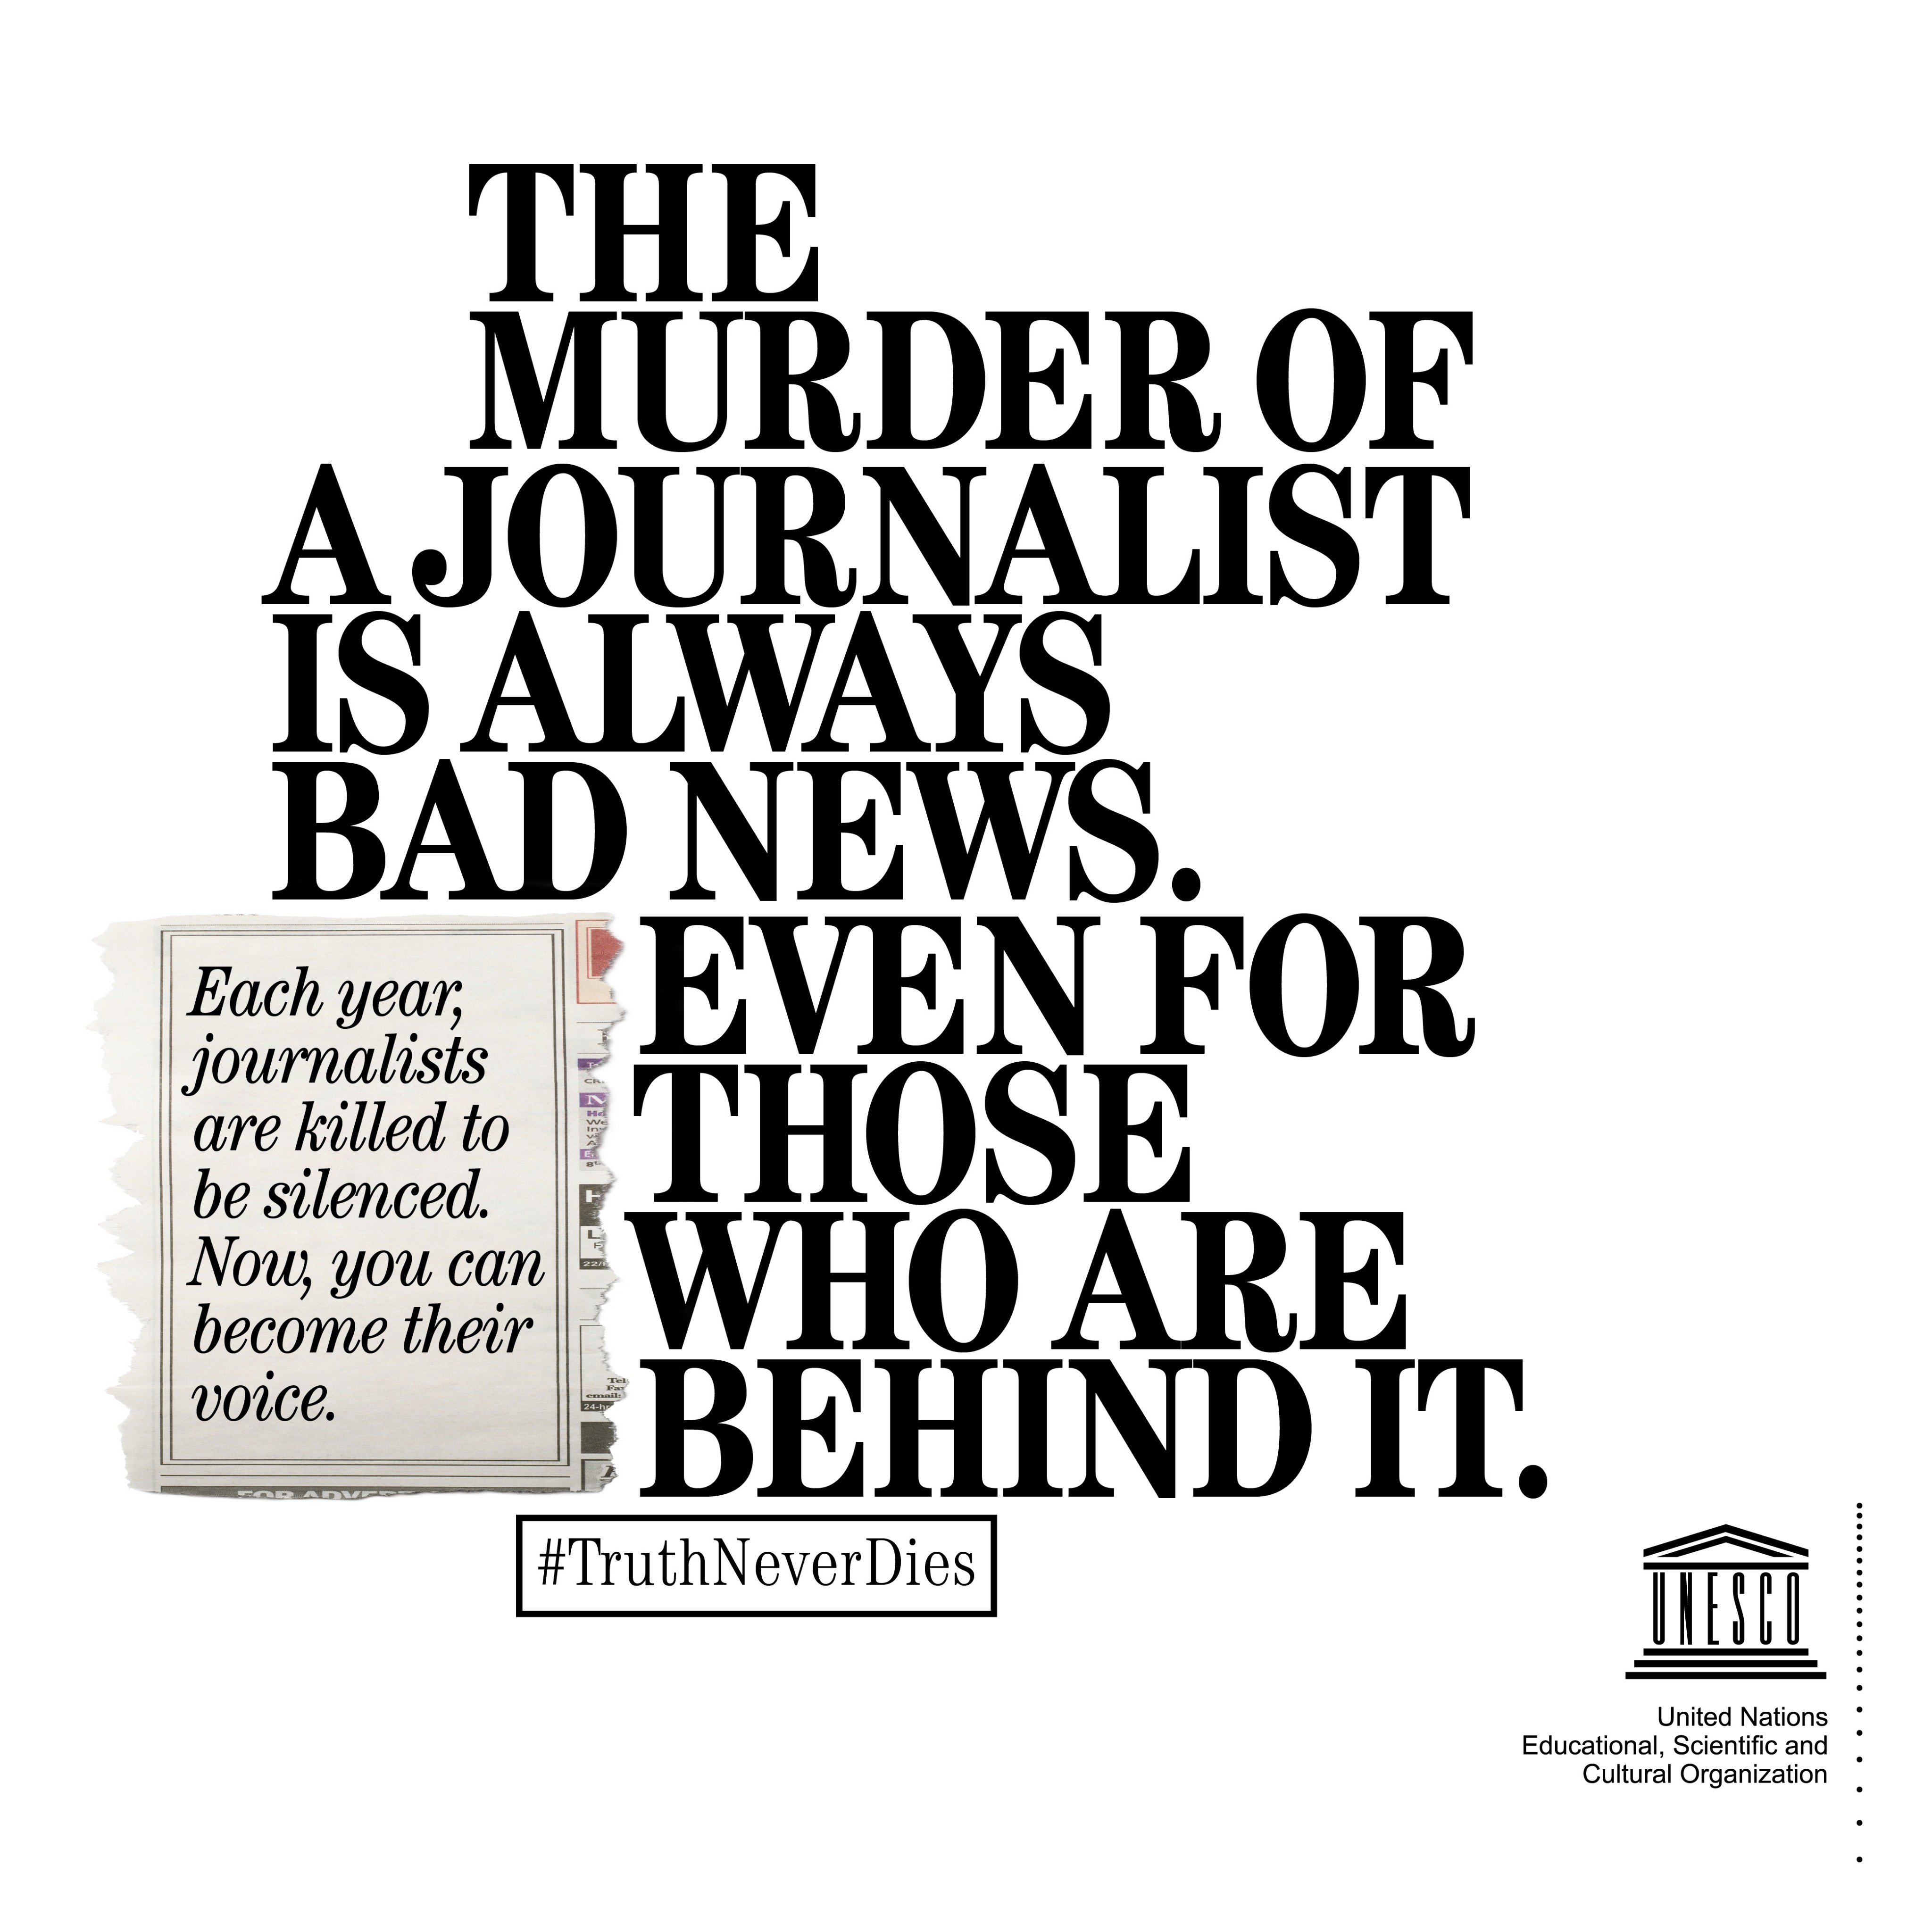 Le meurtre d'un journaliste est toujours une mauvaise nouvelle. Même pour ceux qui l'ont causé (Photo, UNESCO).